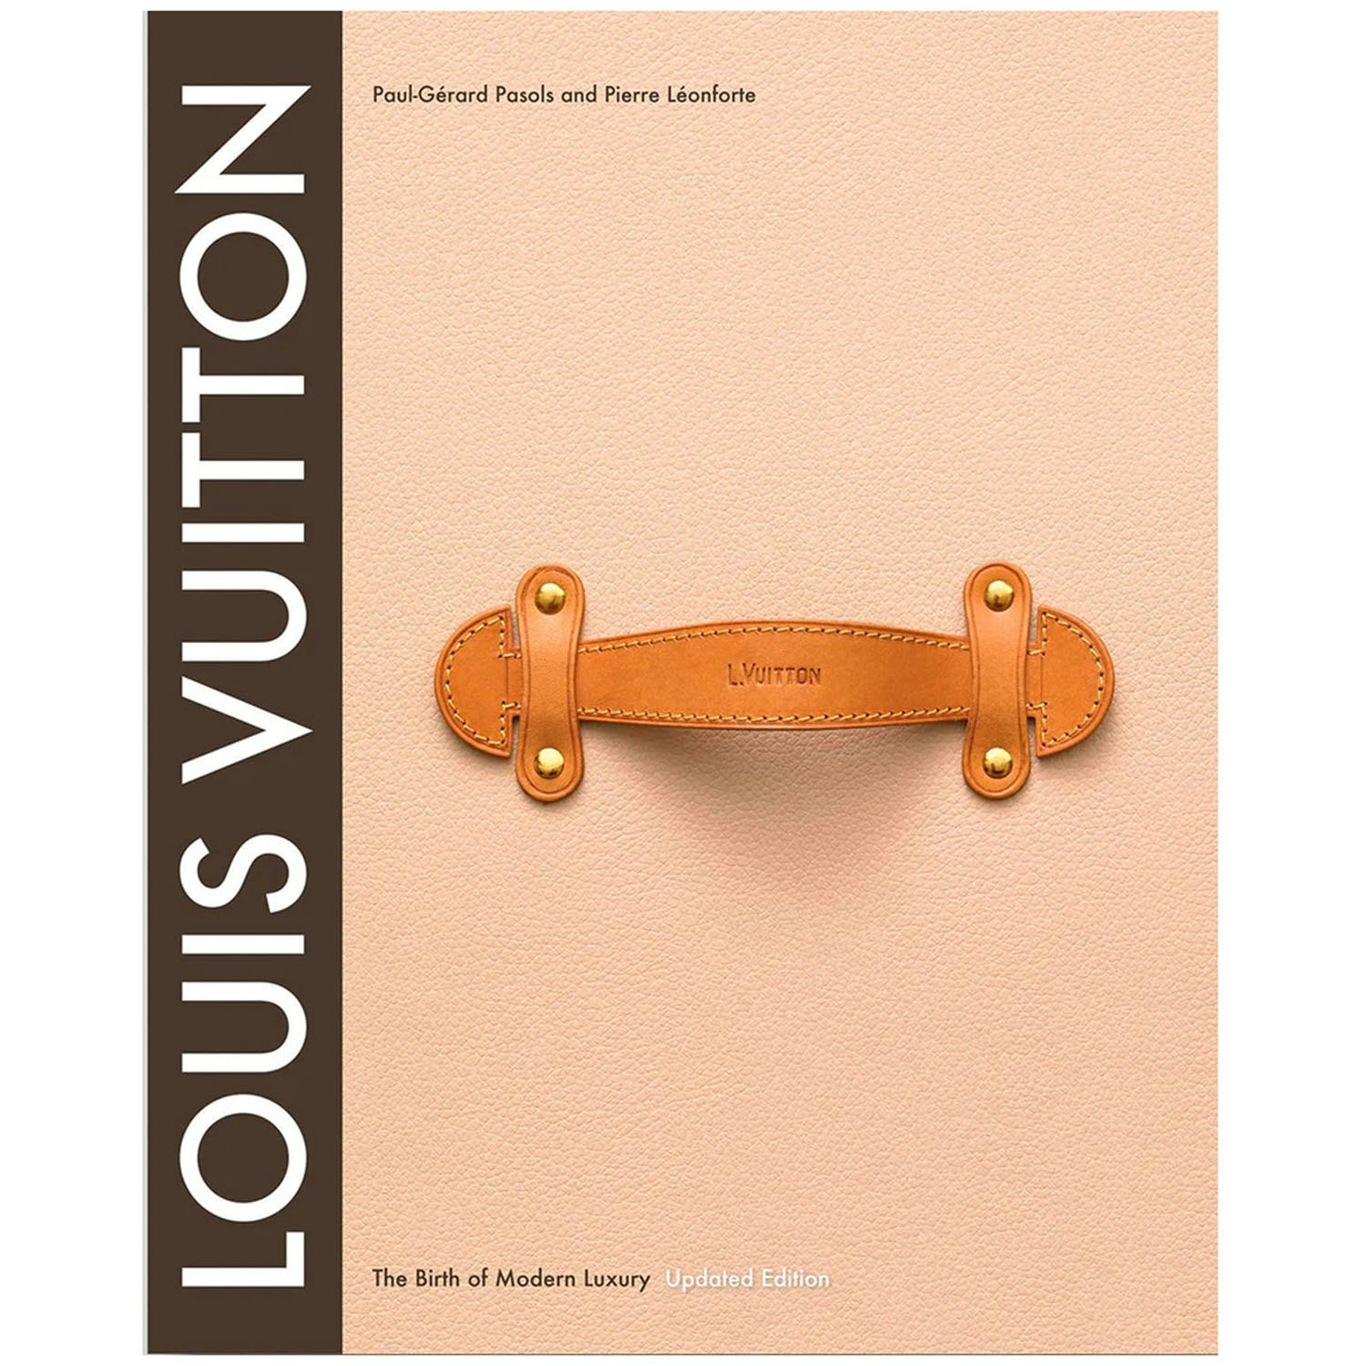 Louis Vuitton: The Birth of Modern Luxury Boek